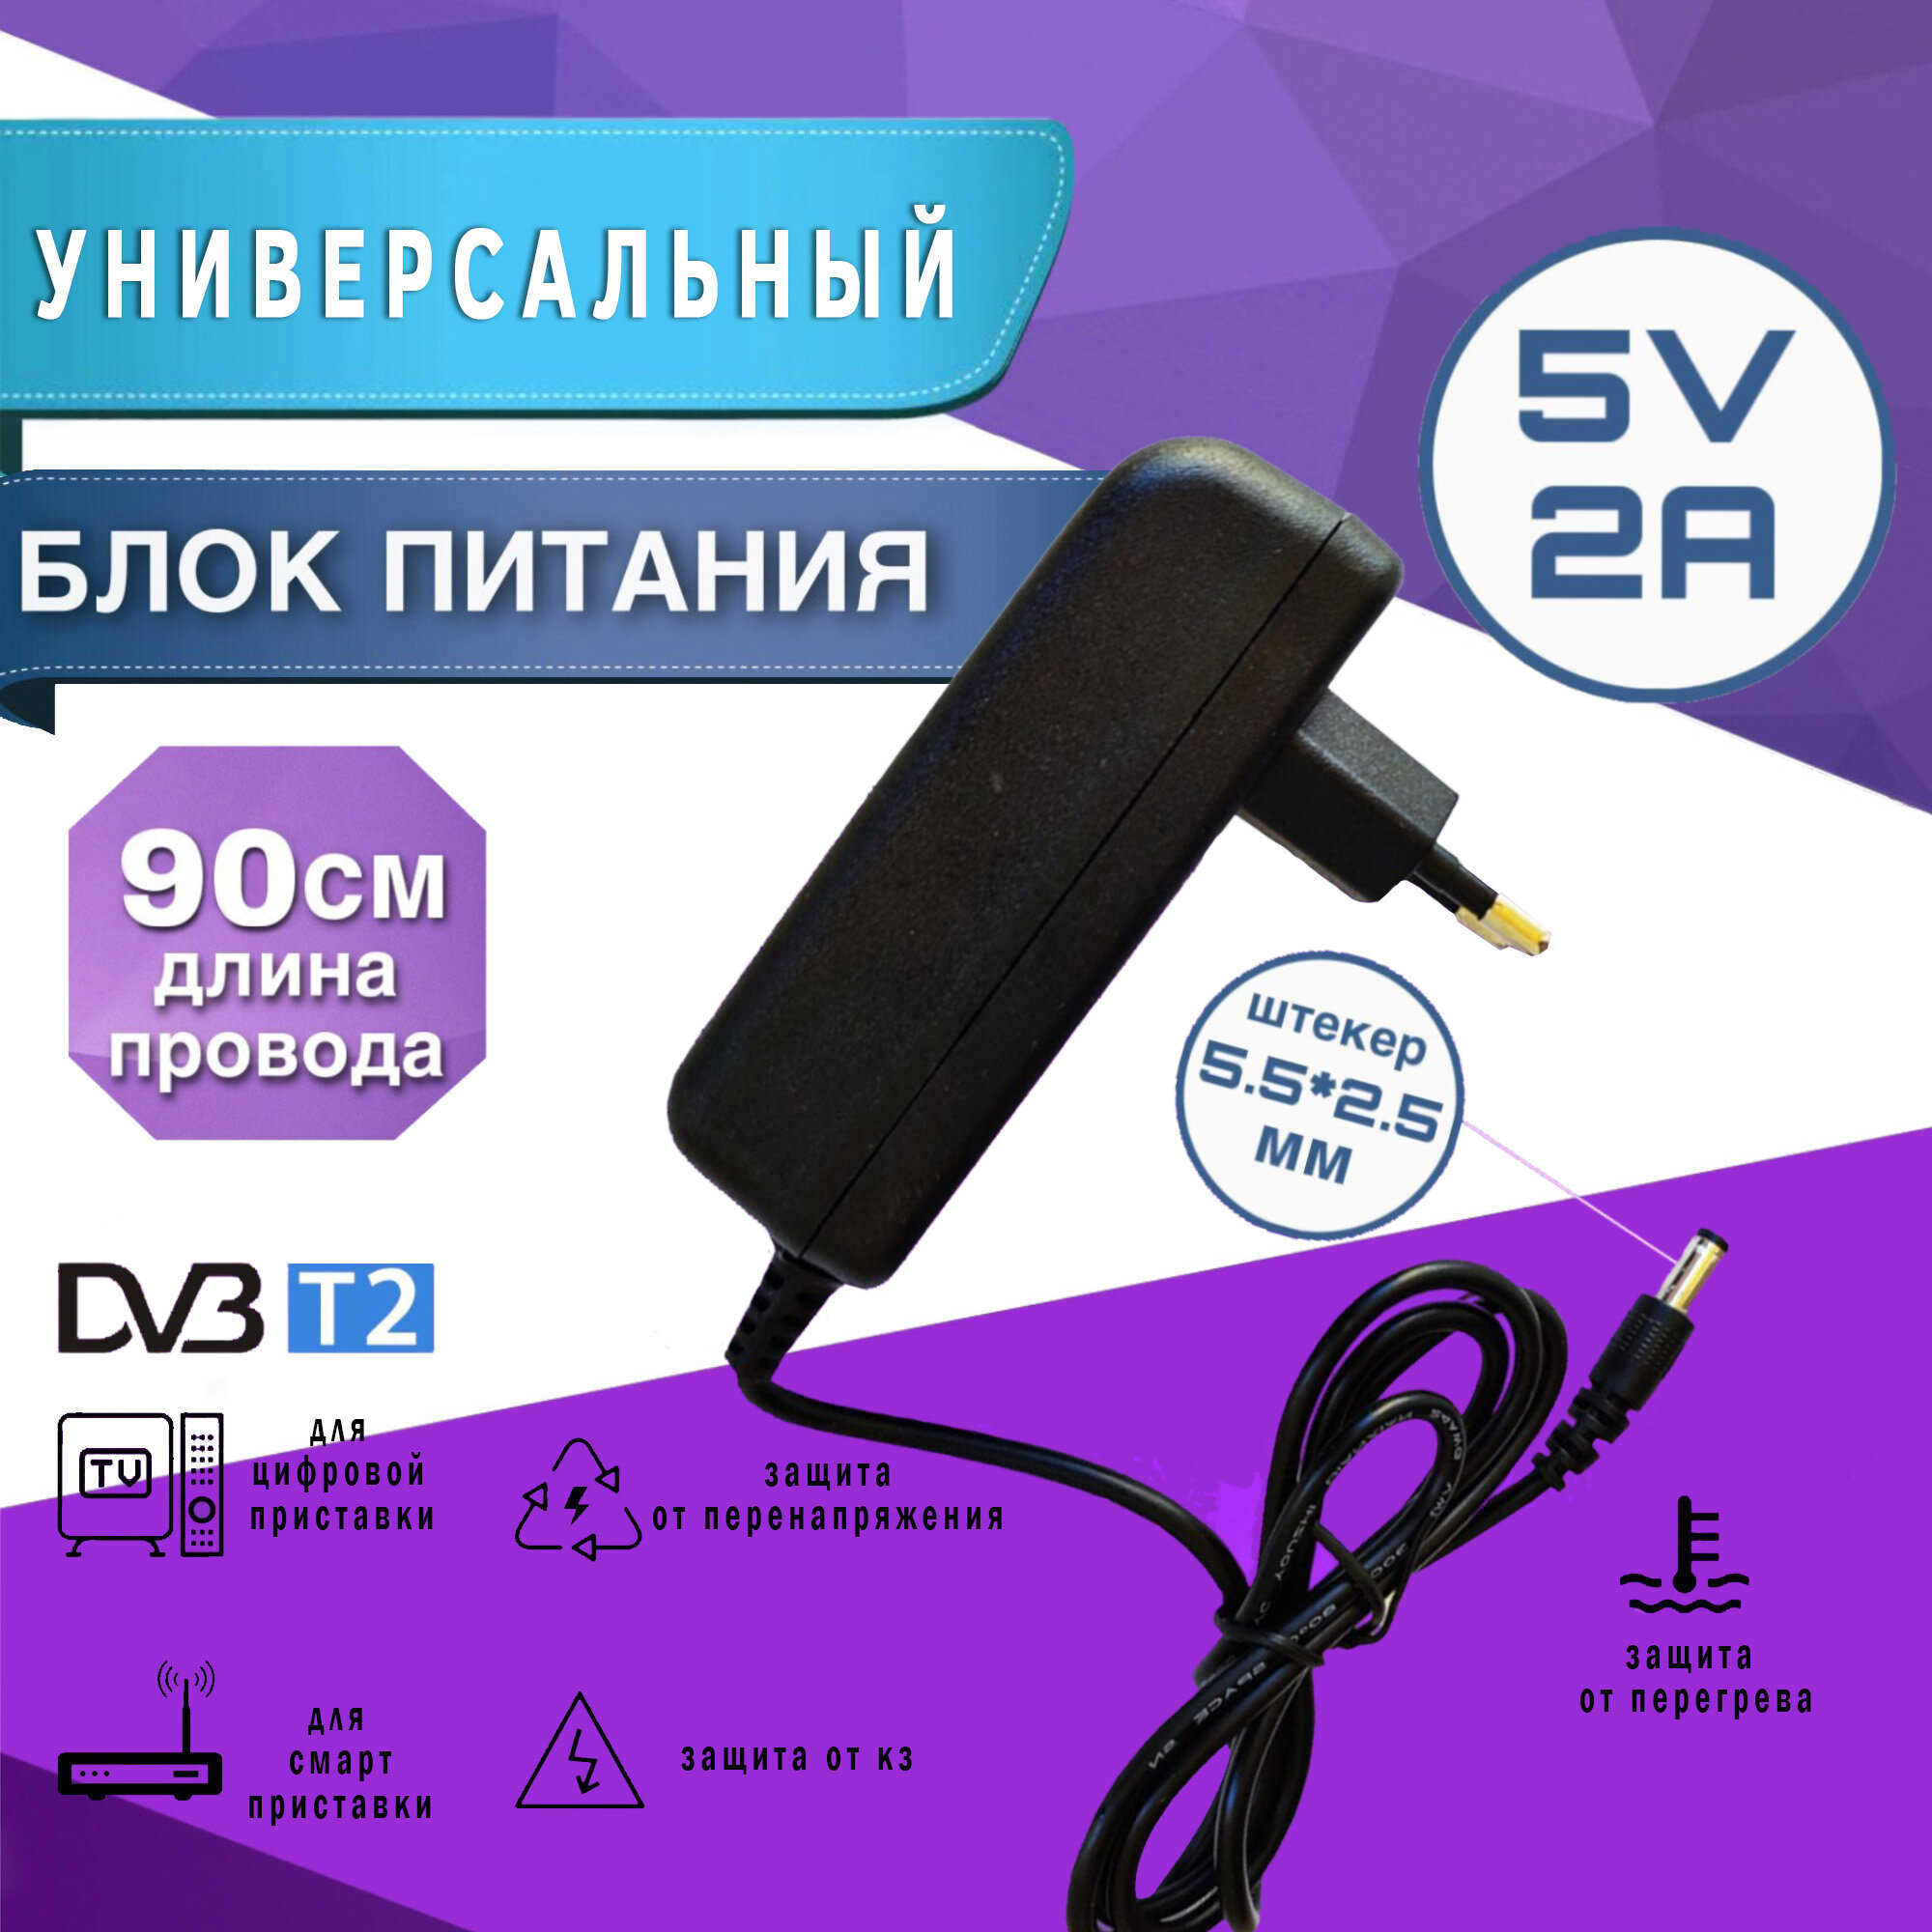 Блок питания Live Power 5V 2A (5.5x2.5 мм) для Цифровых DVB-T2 и Смарт приставок